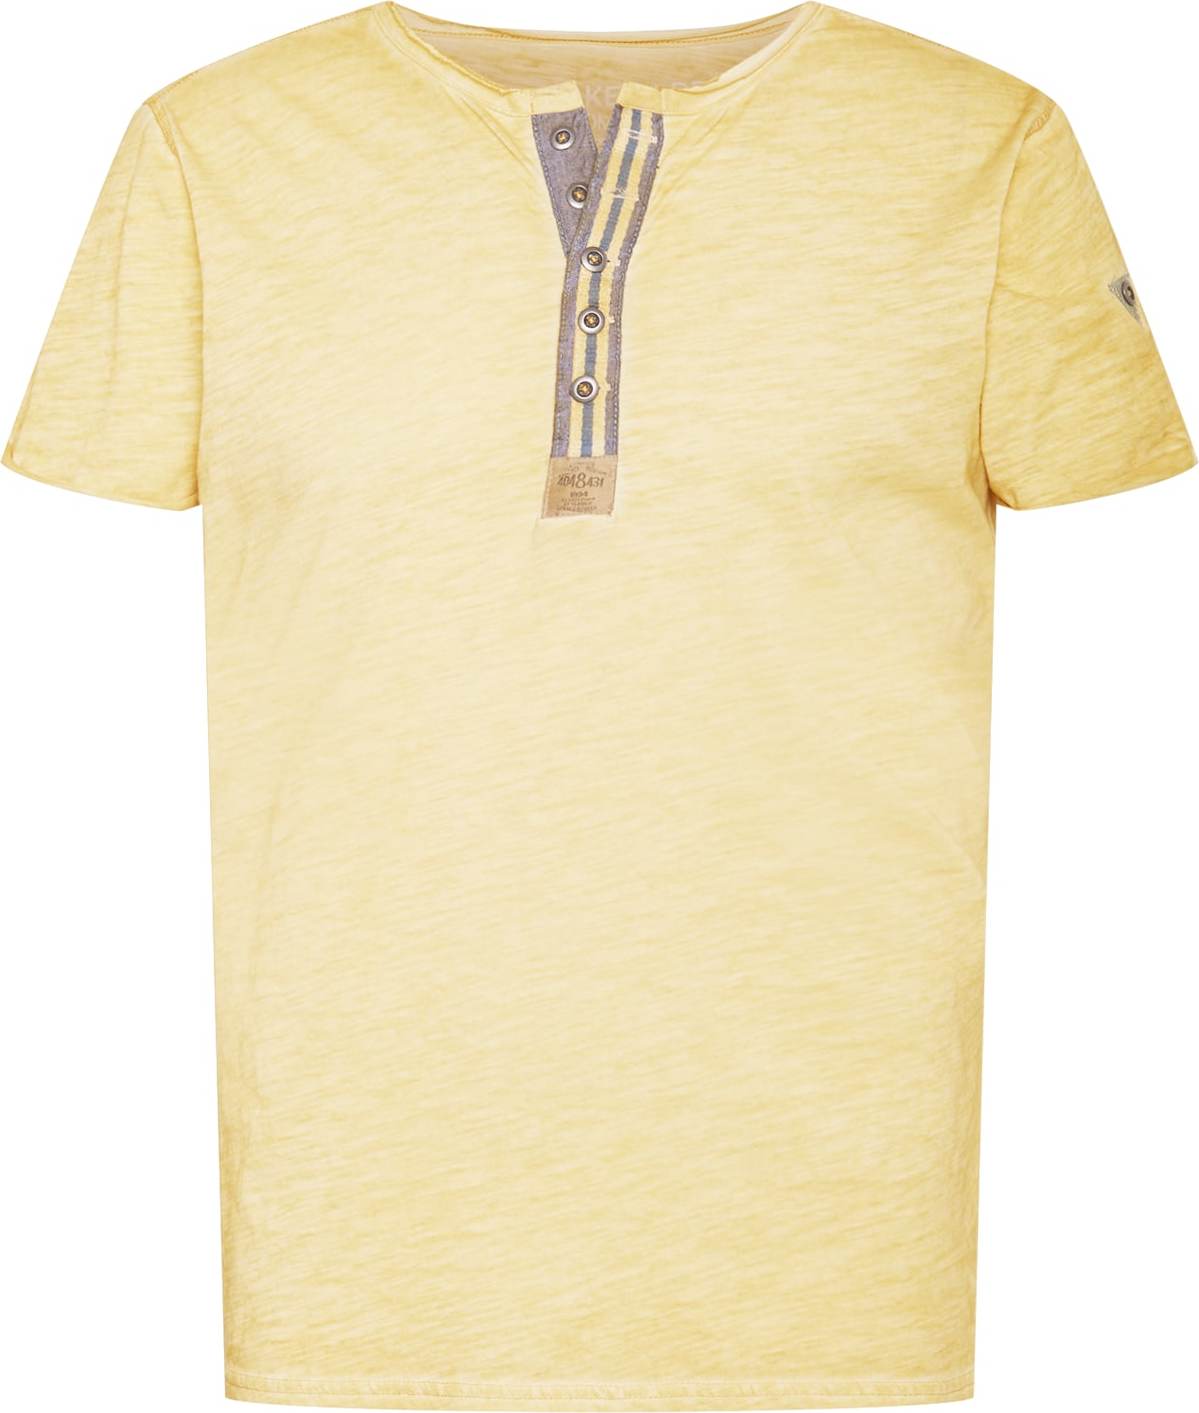 Tričko 'Arena' Key Largo žlutý melír / šedá